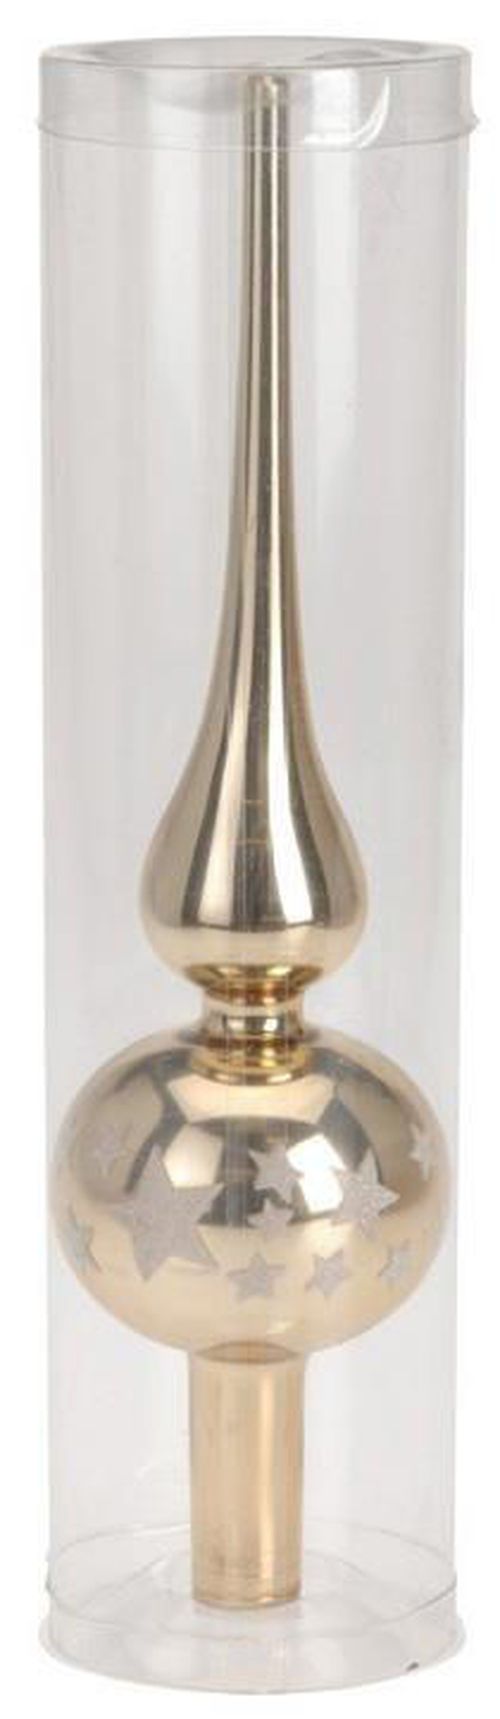 купить Новогодний декор Promstore 32954 Верхушка елочная стеклянная 25сm, золотая в Кишинёве 